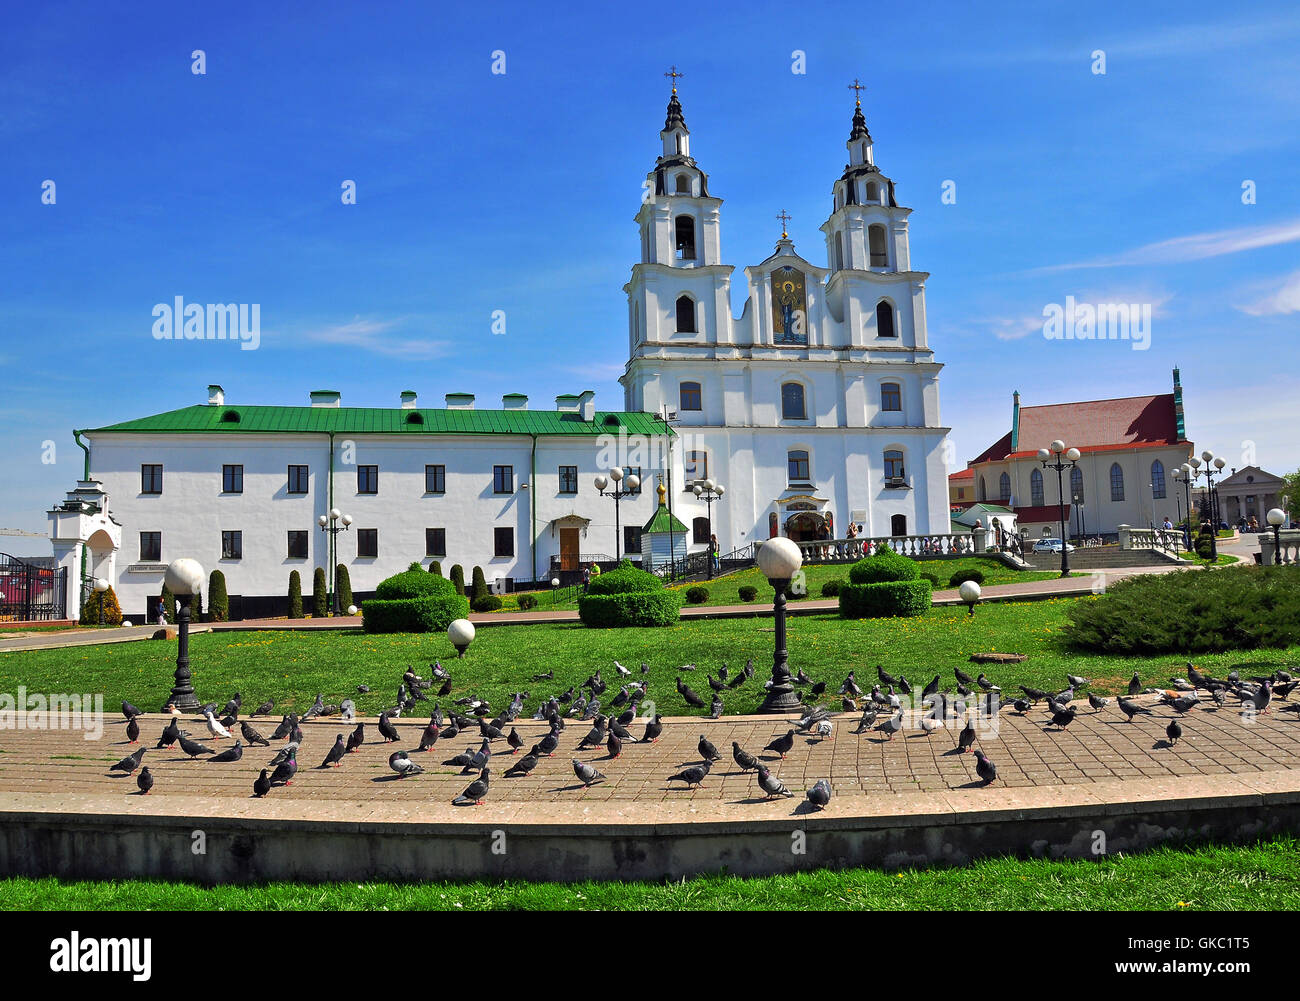 Vue de la place de la cathédrale de la ville de Minsk, Bélarus Banque D'Images